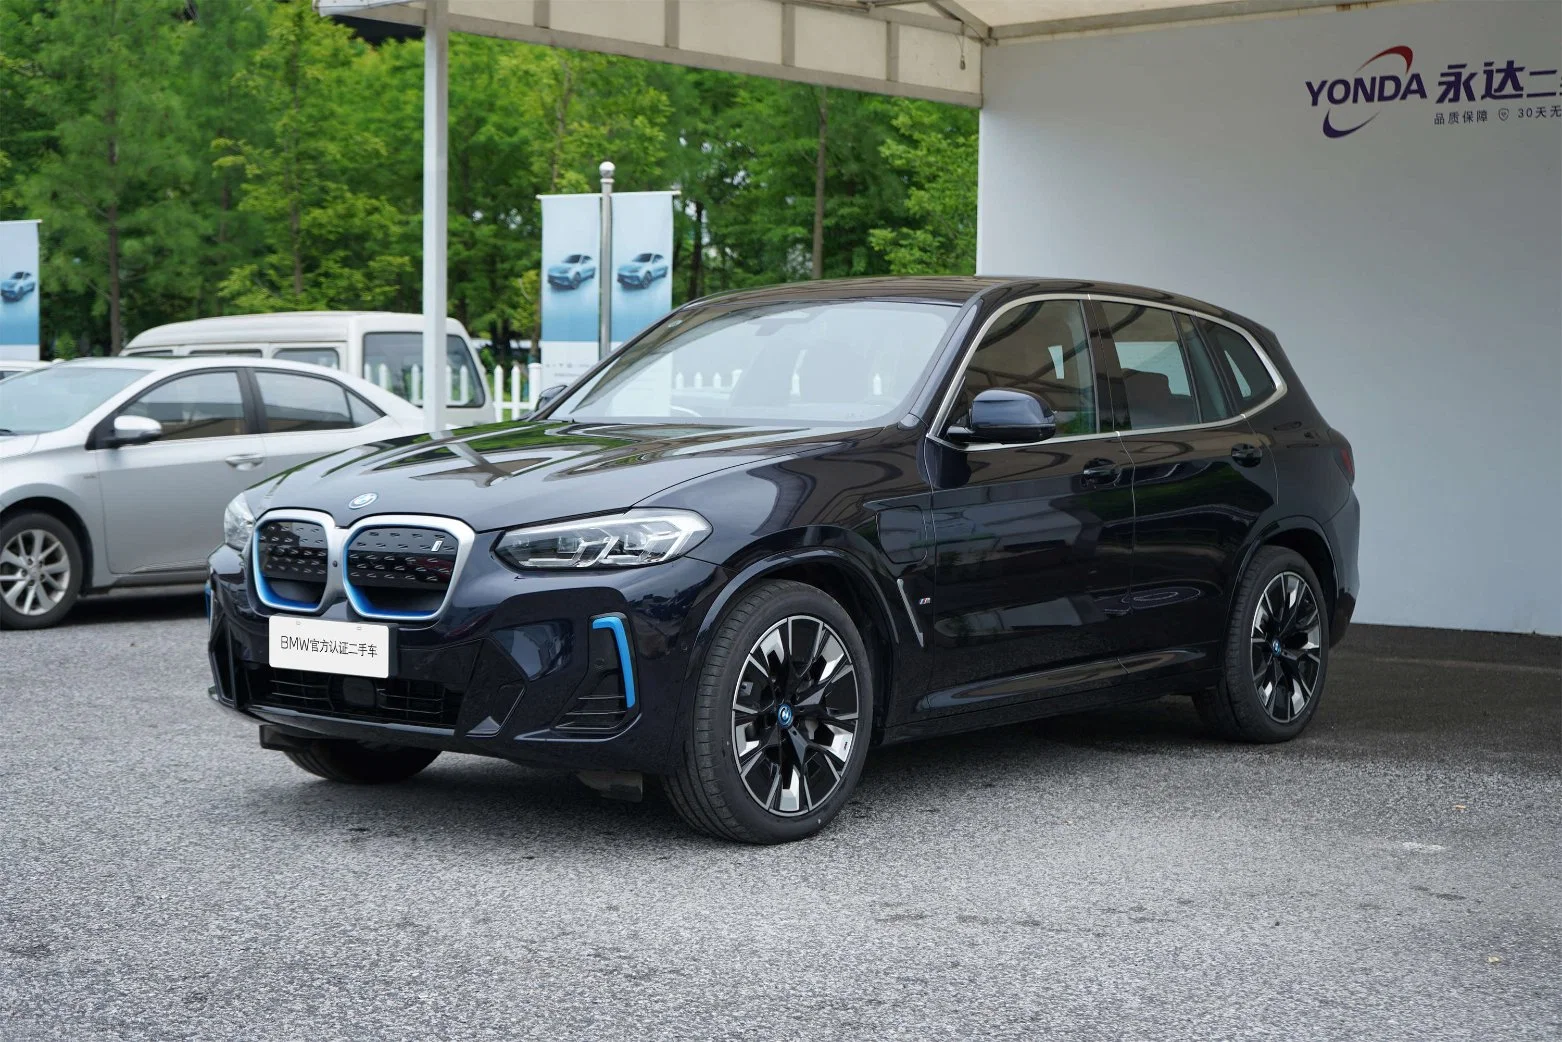 BMW 2021-22 IX3 Real Used Electric Auto car 5 sièges Véhicule utilitaire sport à conduite à gauche